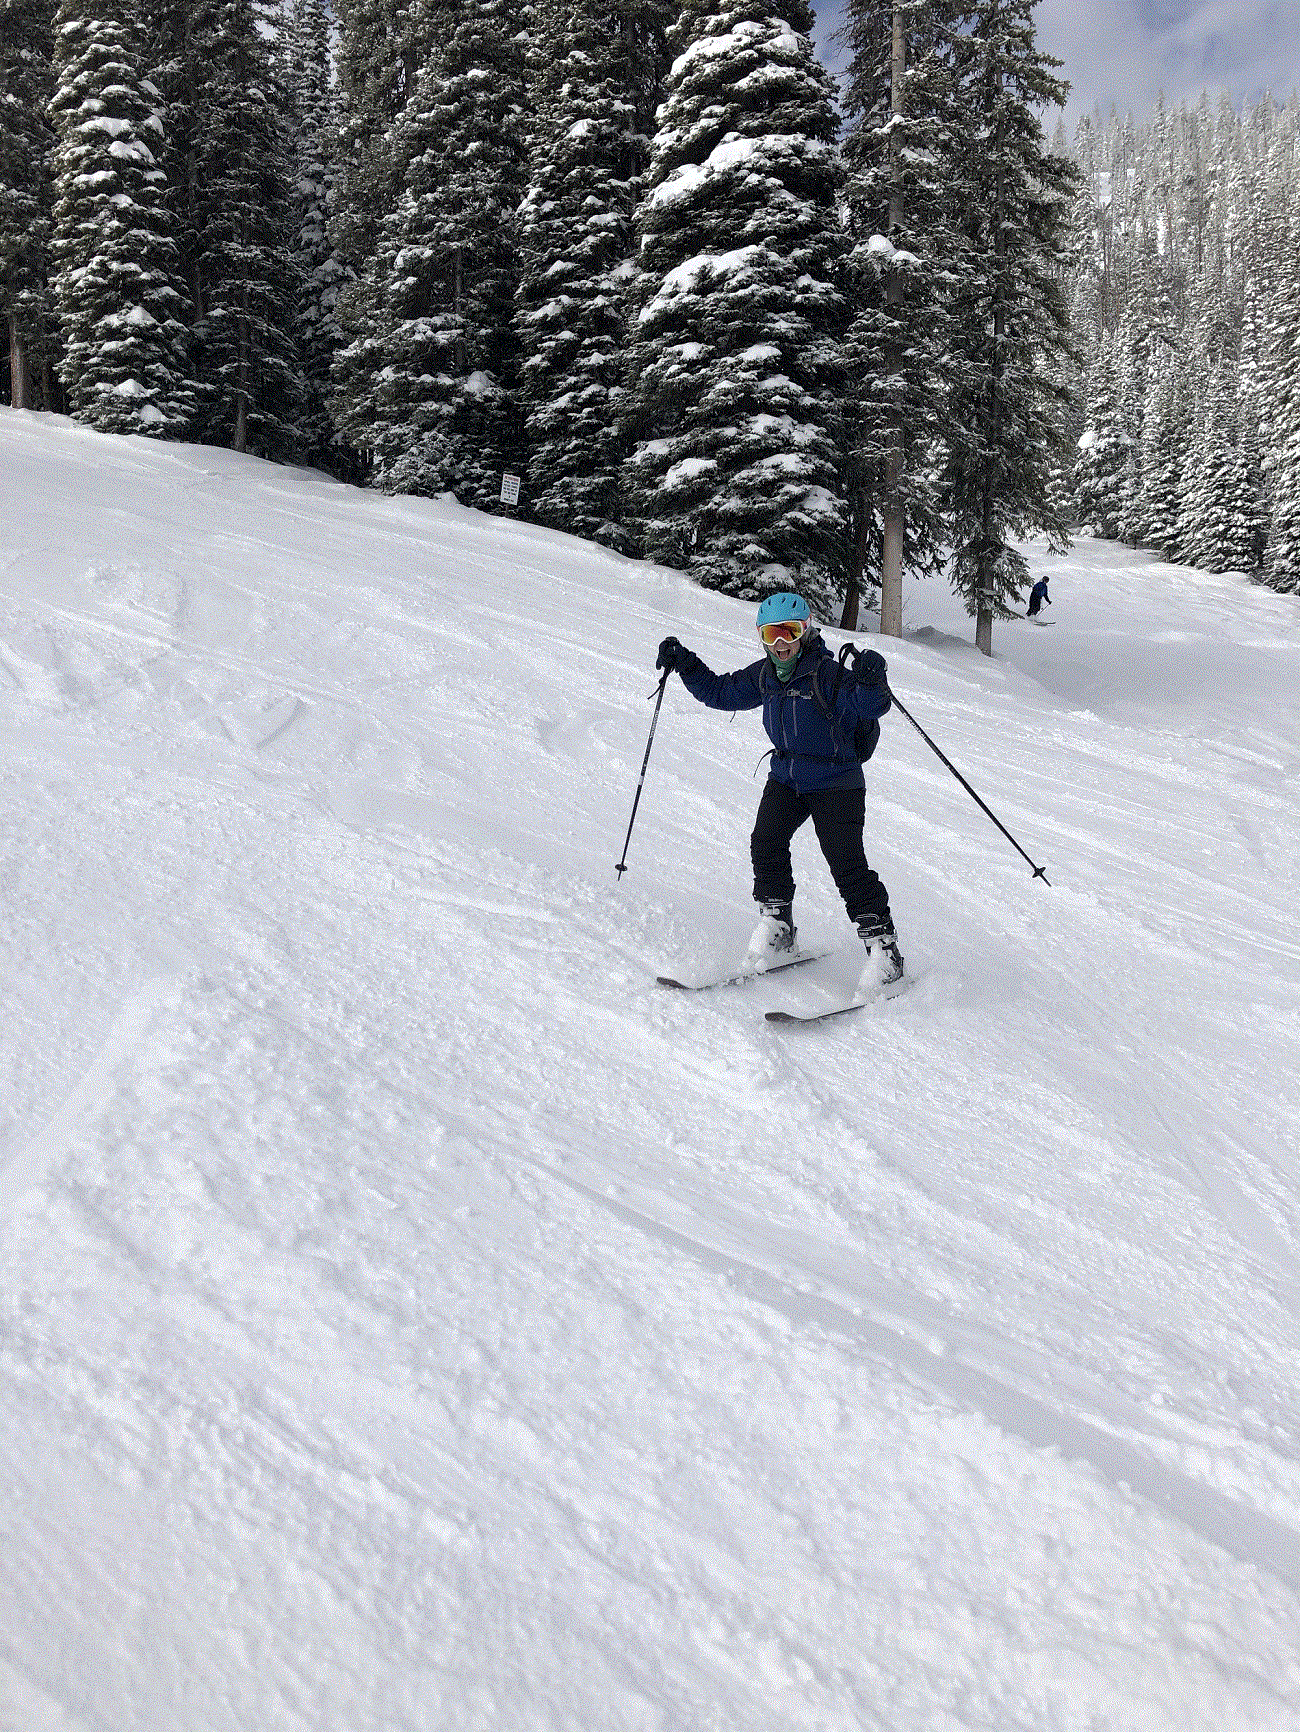 Sierra Club staff member Karlie skiing last year. Photo courtesy Karlie Drutz